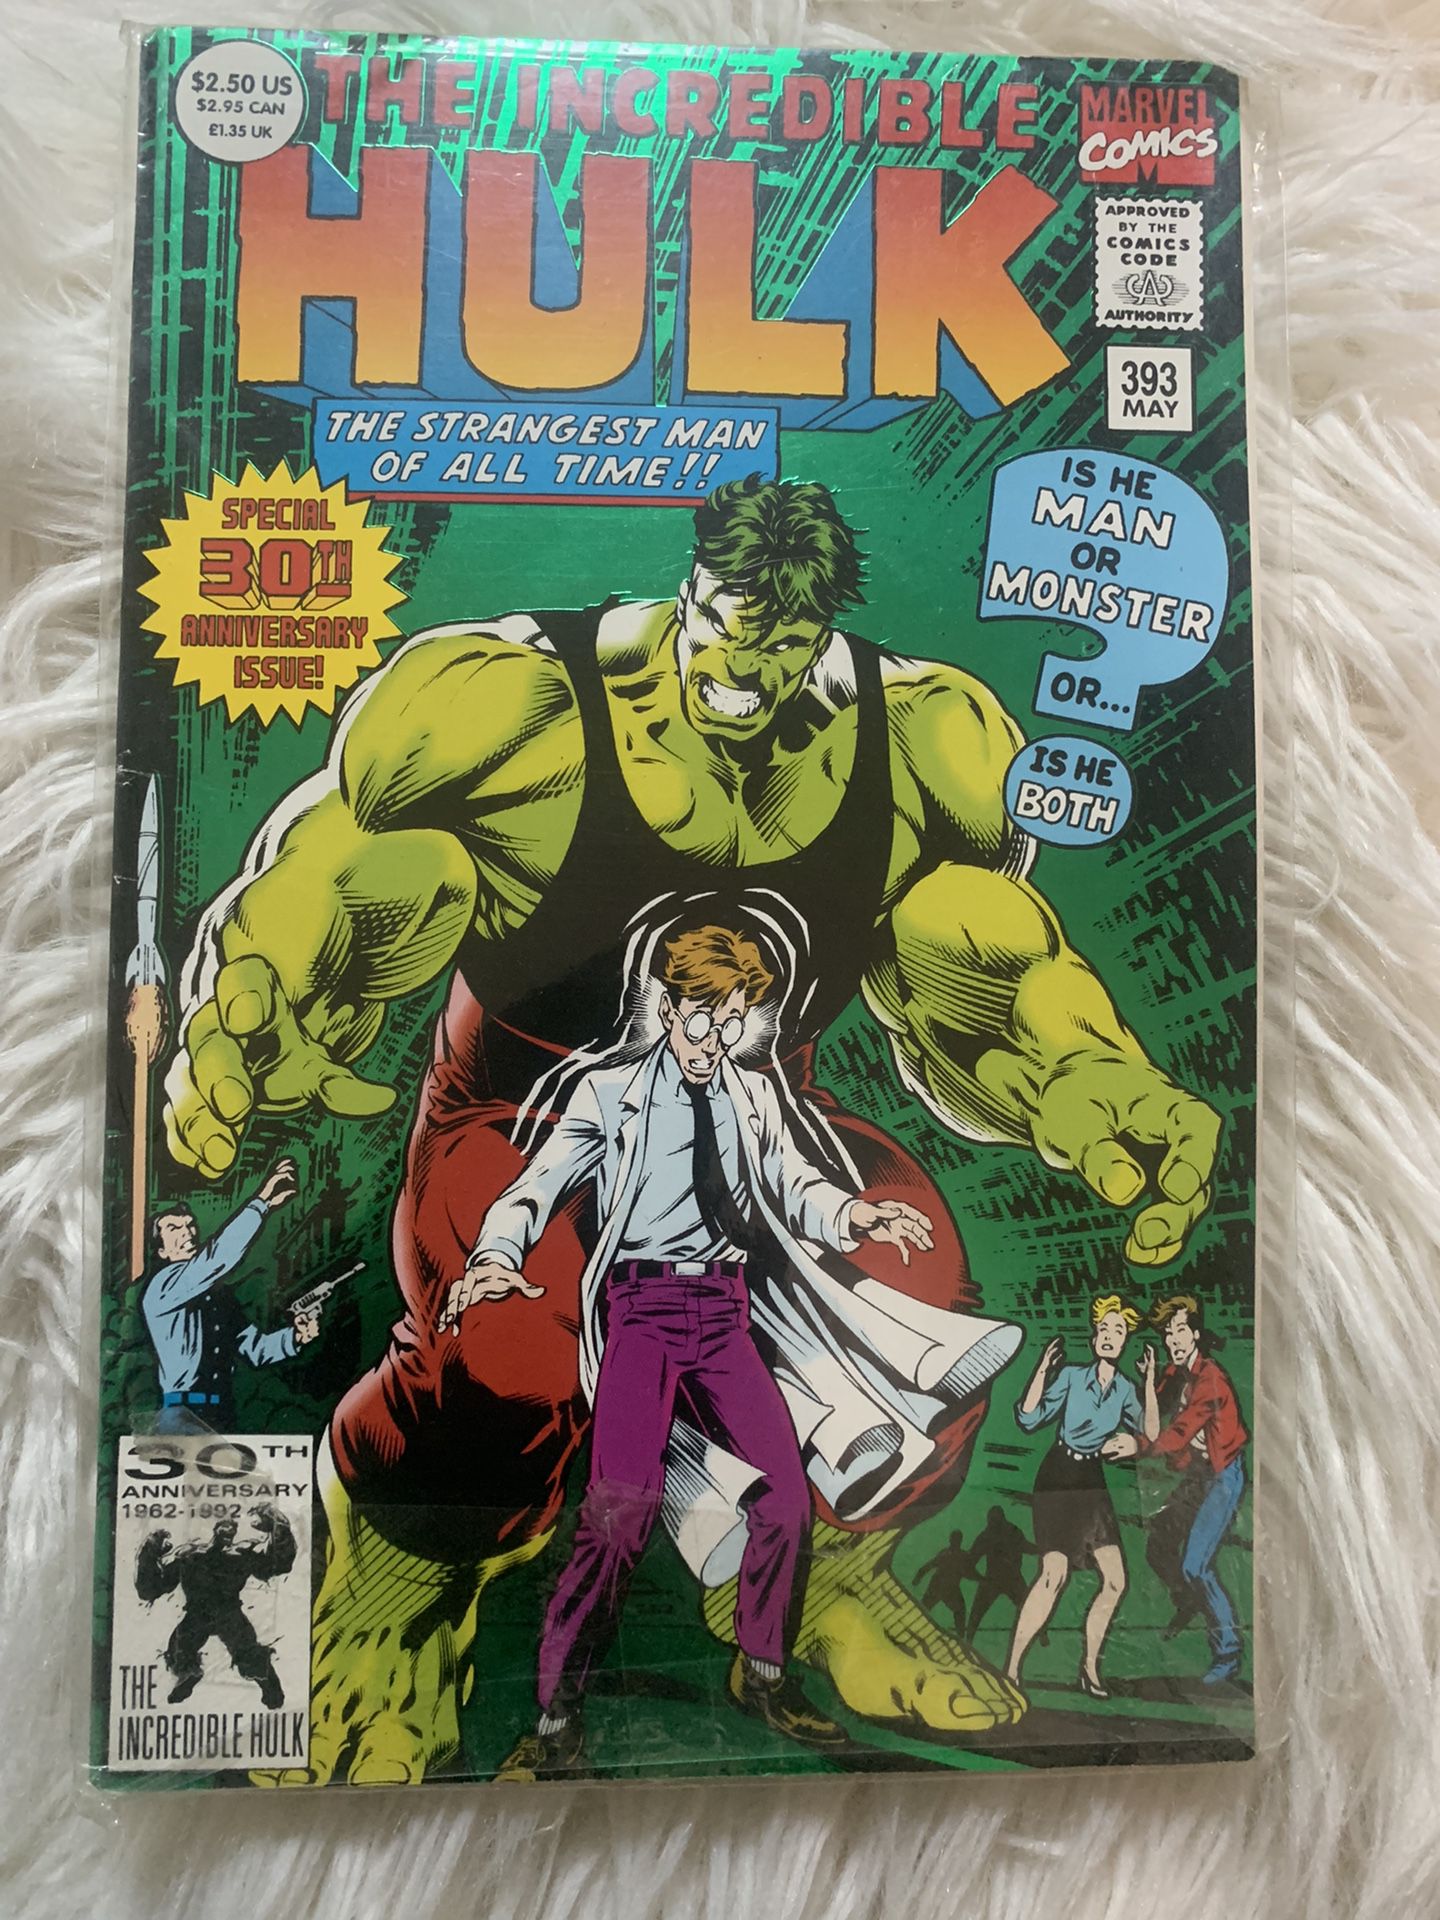 The Incredible Hulk May 393